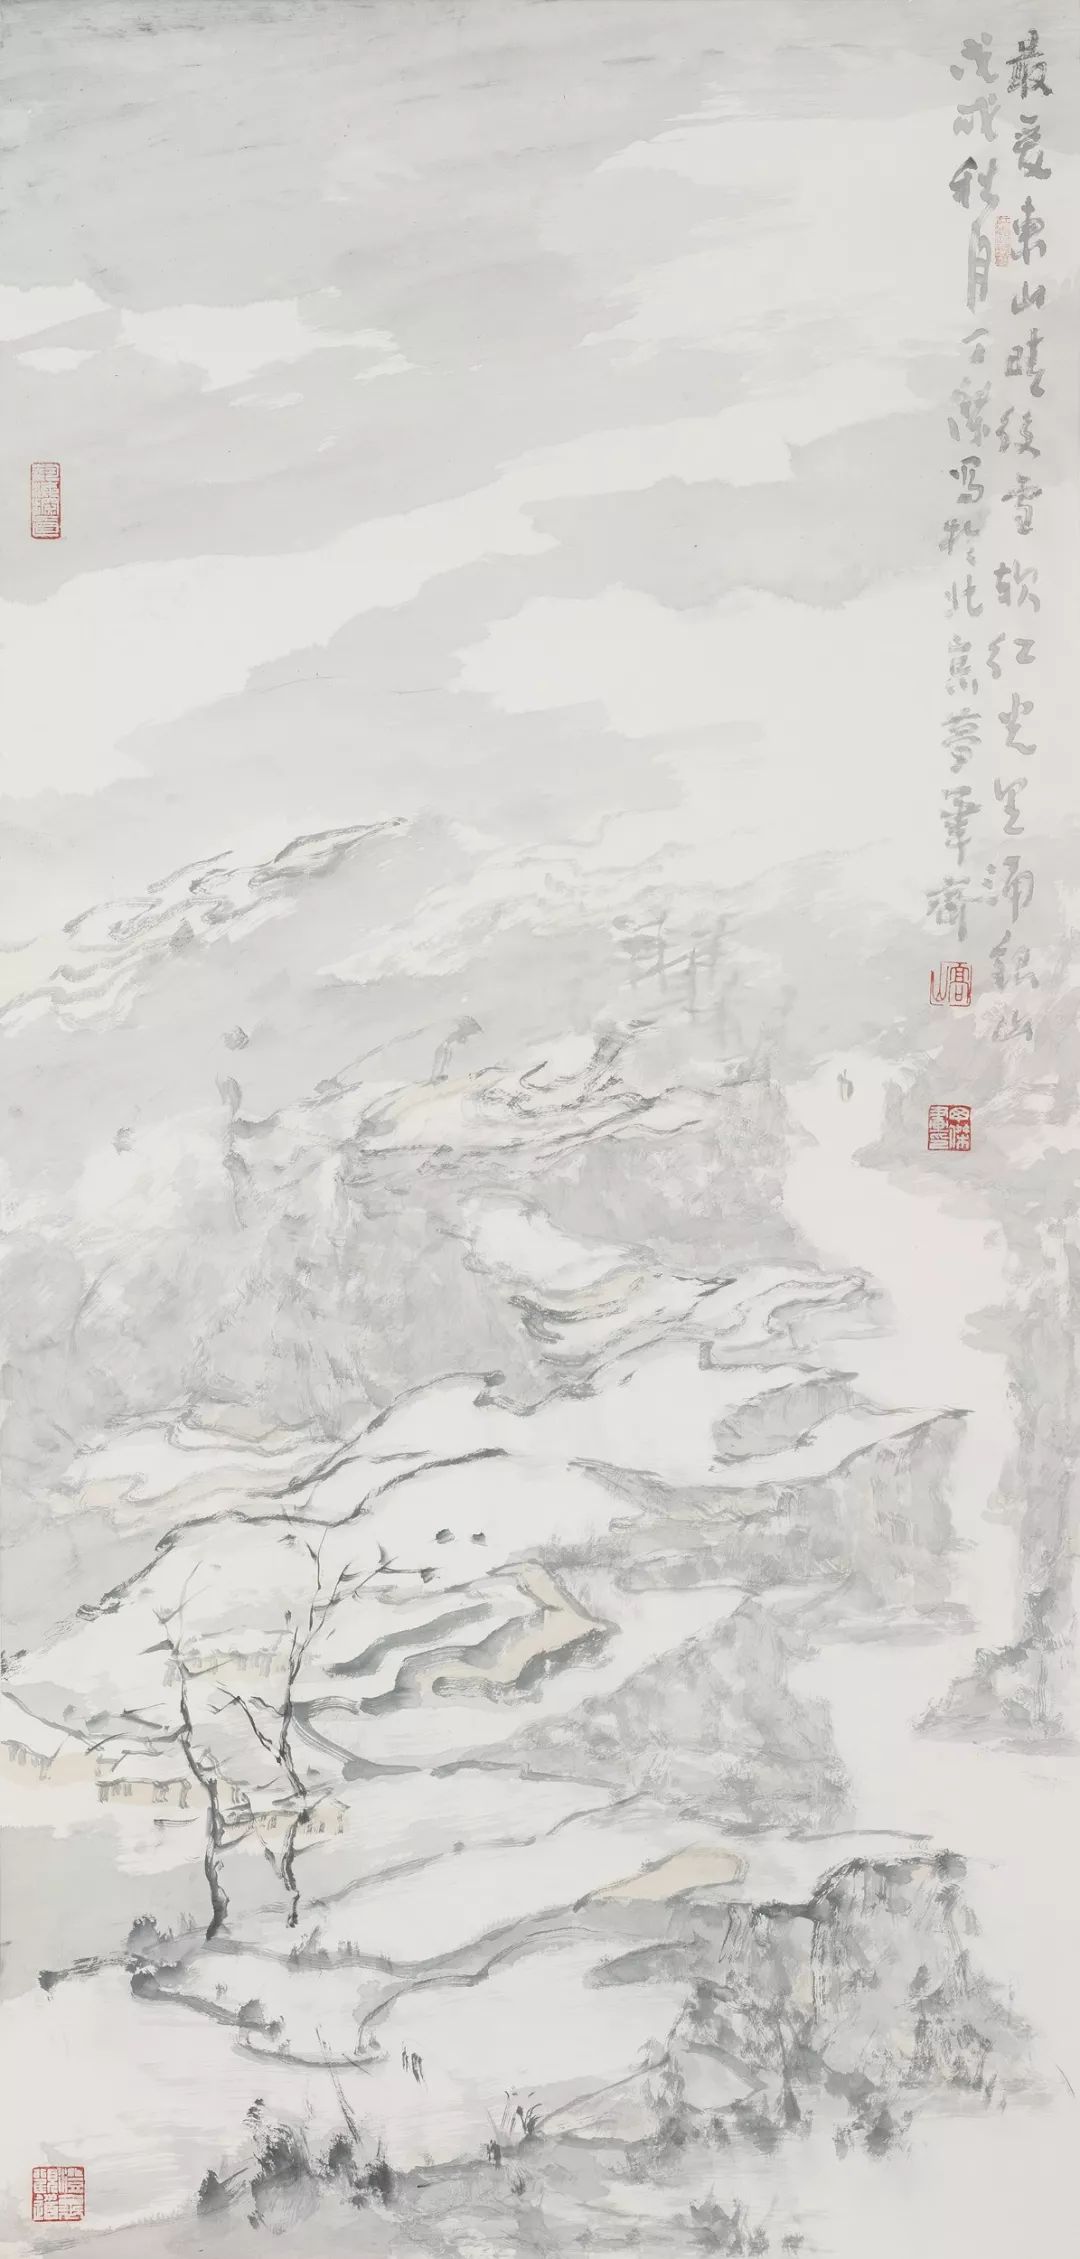 “墨索·丁杰水墨画作品展”在江苏省现代美术馆开幕